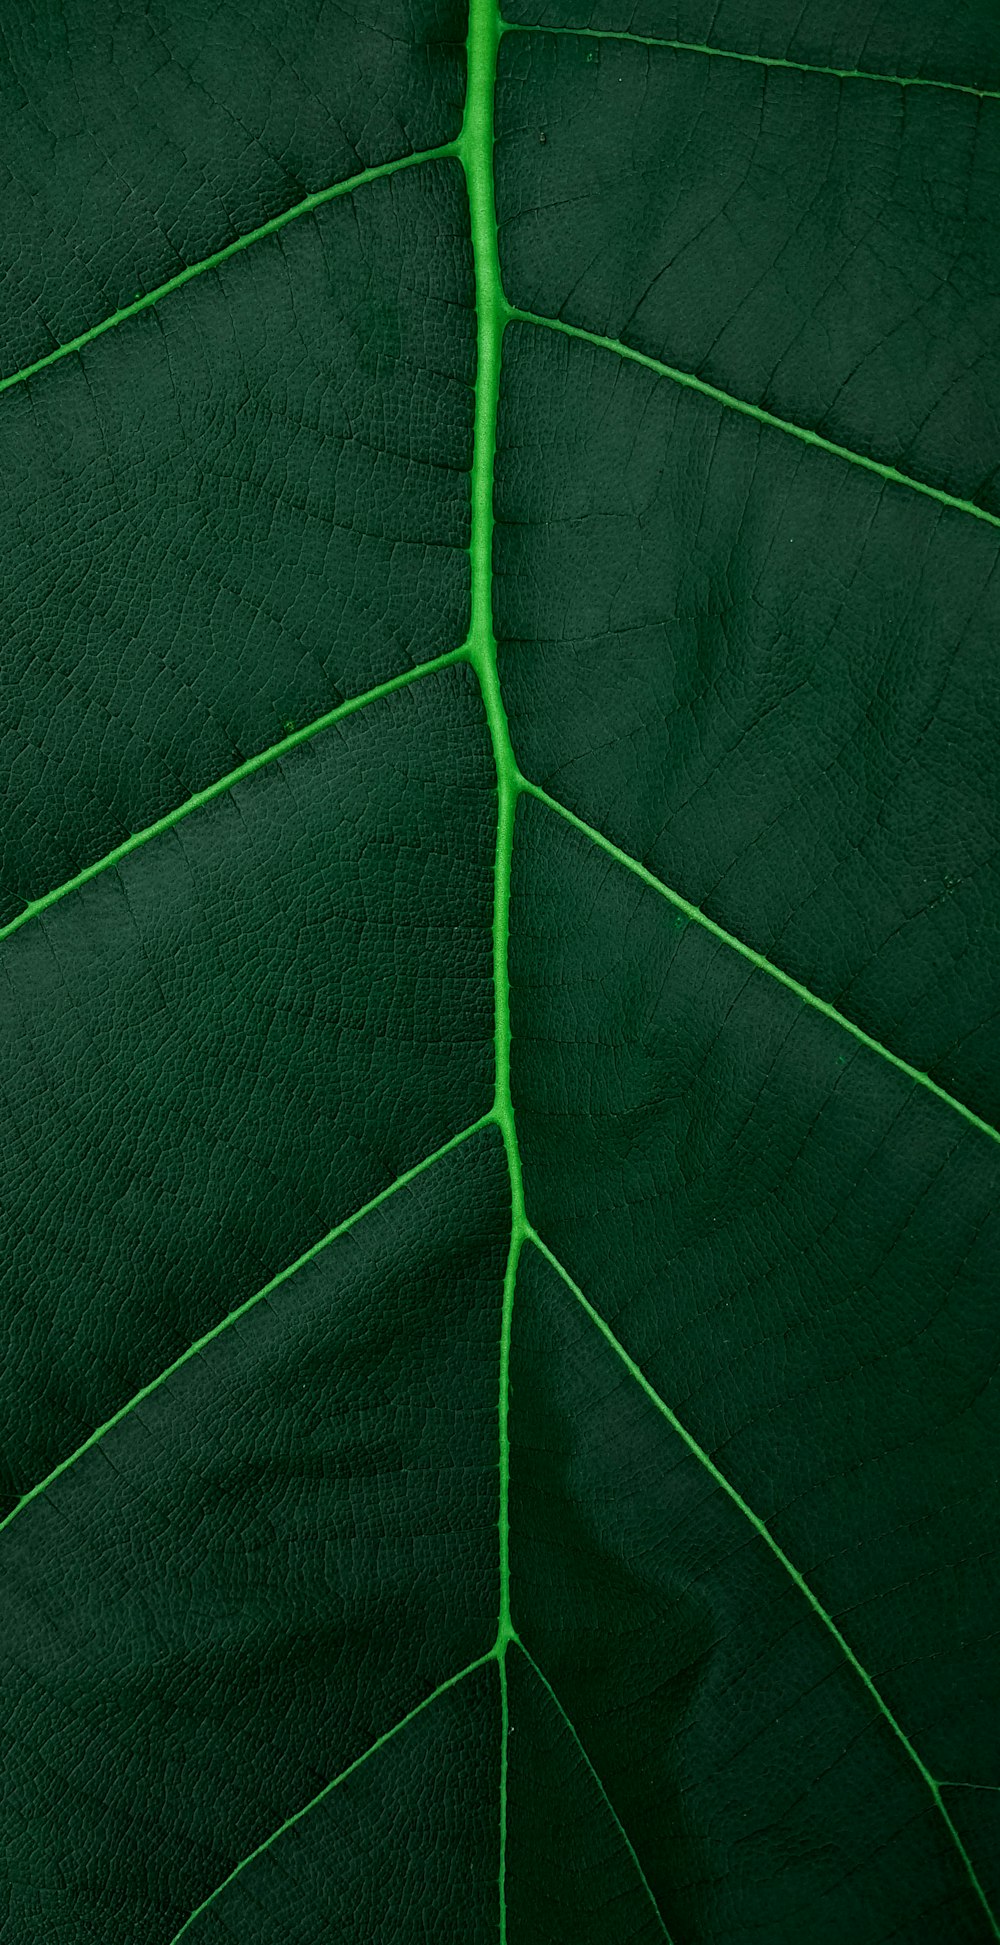 クローズアップ写真の緑の葉